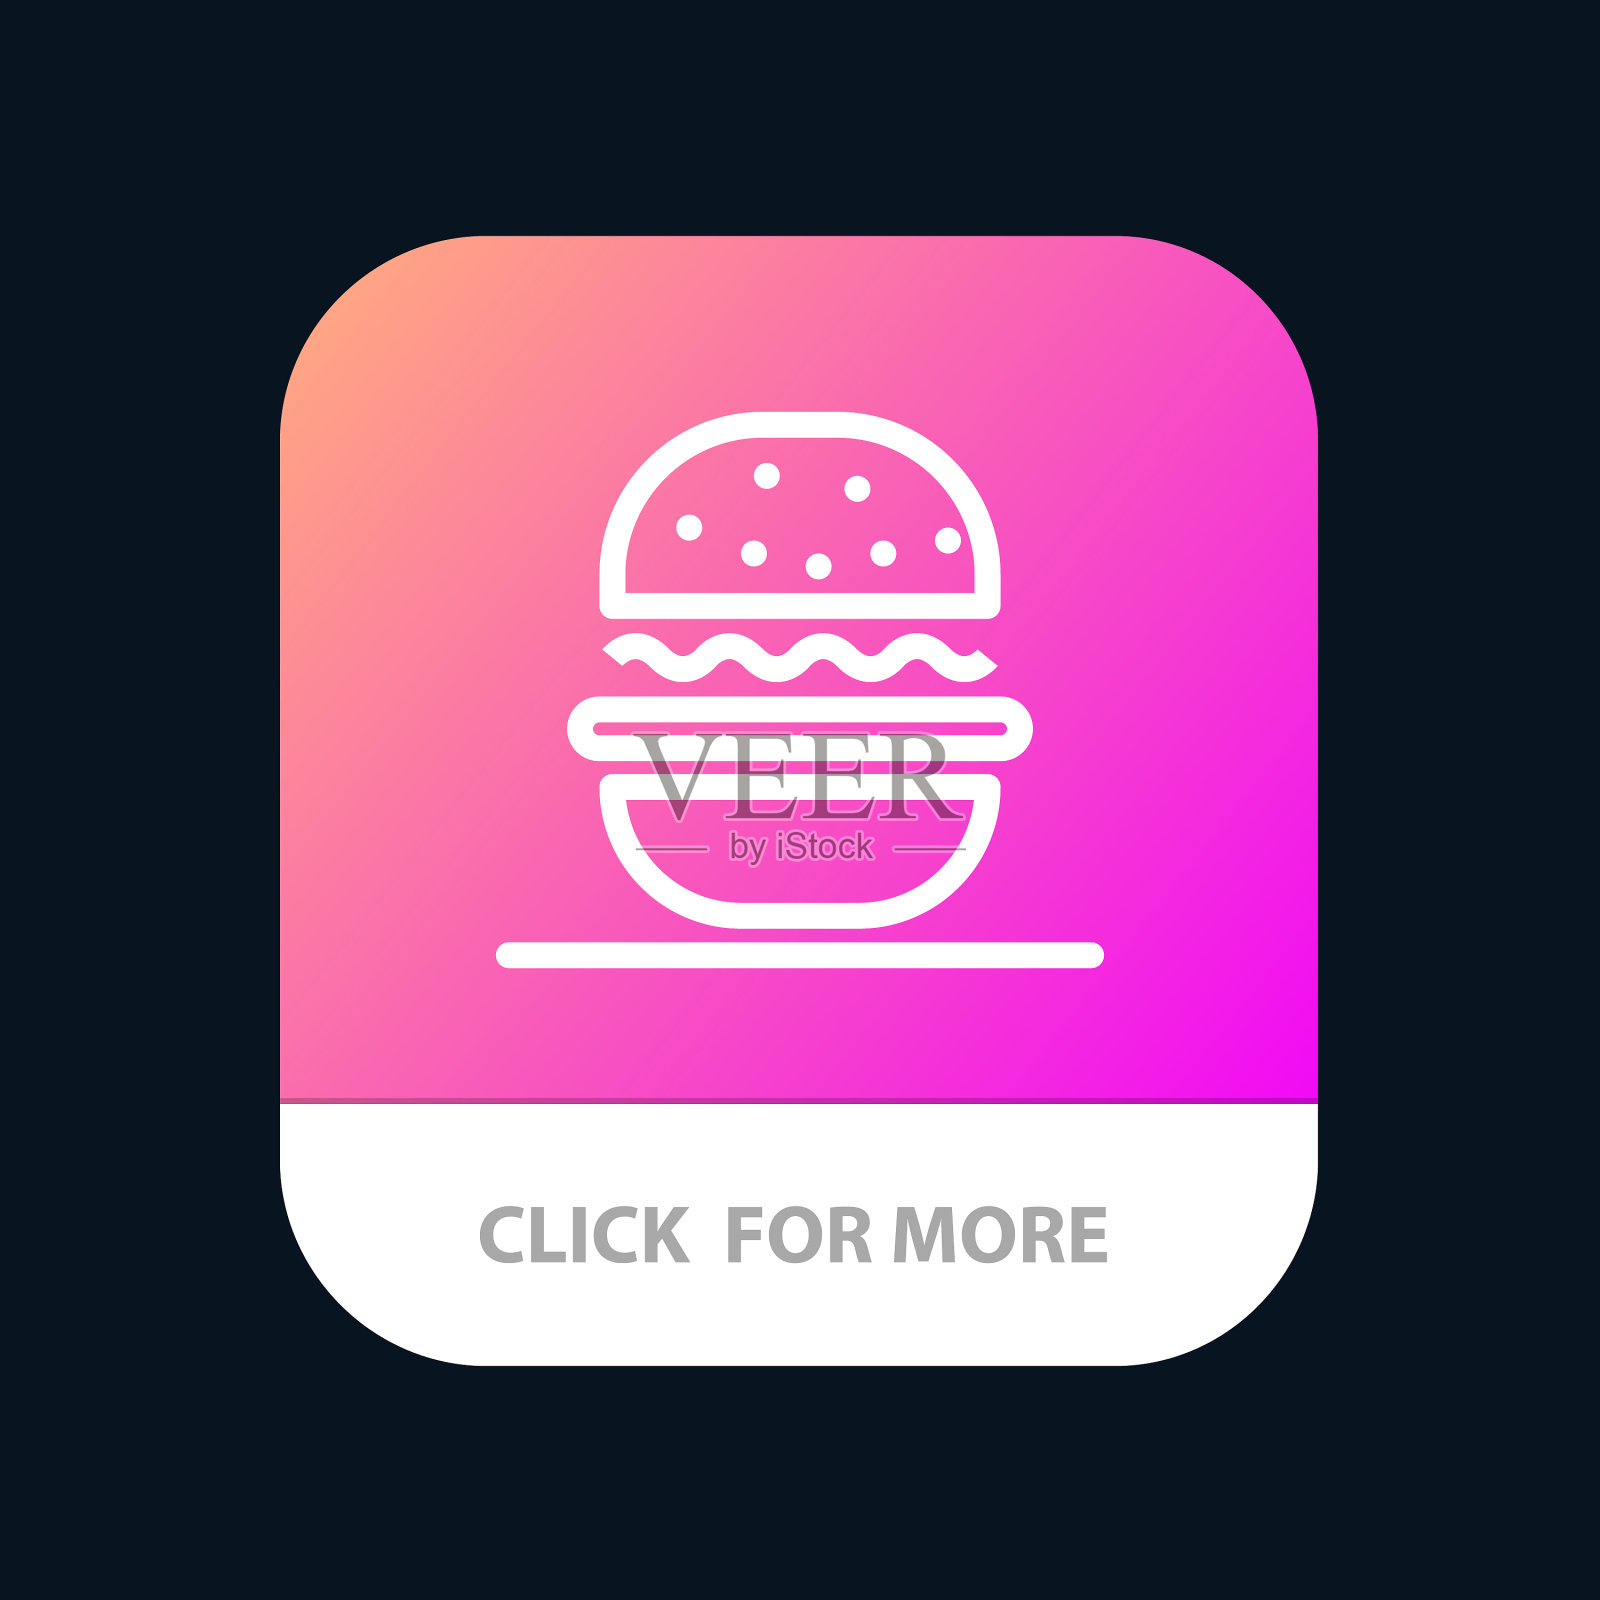 美国汉堡吃美国手机app按钮安卓图标素材